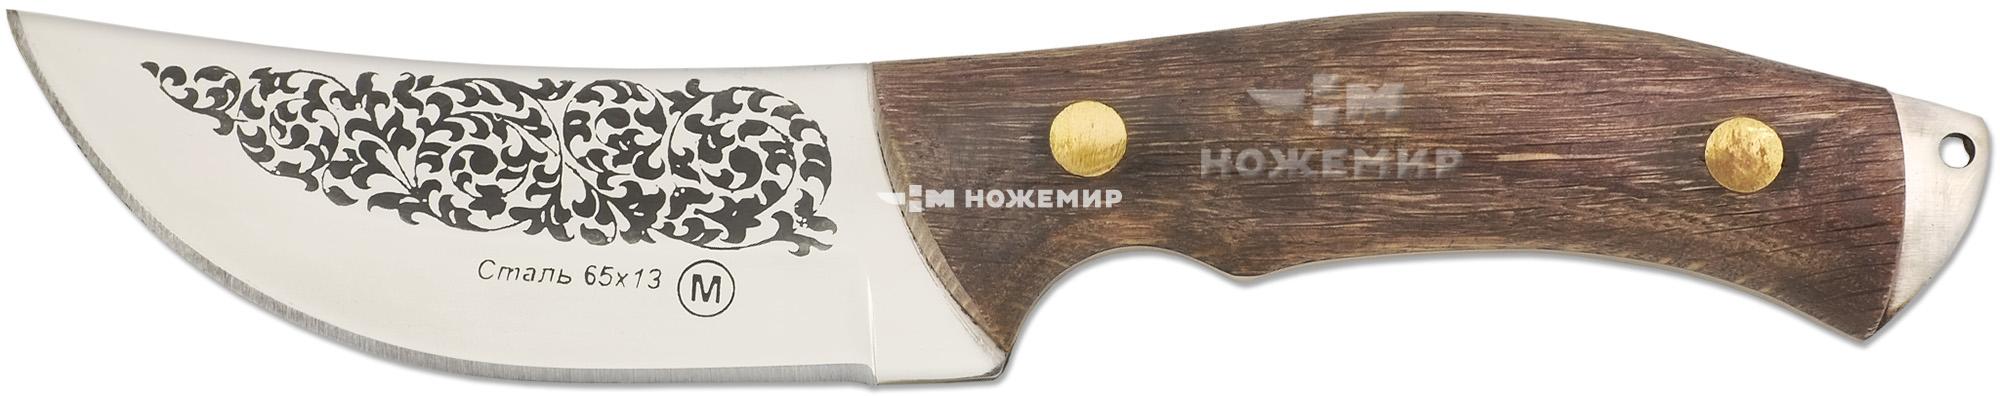 Нож шкуросъёмный Кизляр Ш4-ЦМ (9099)